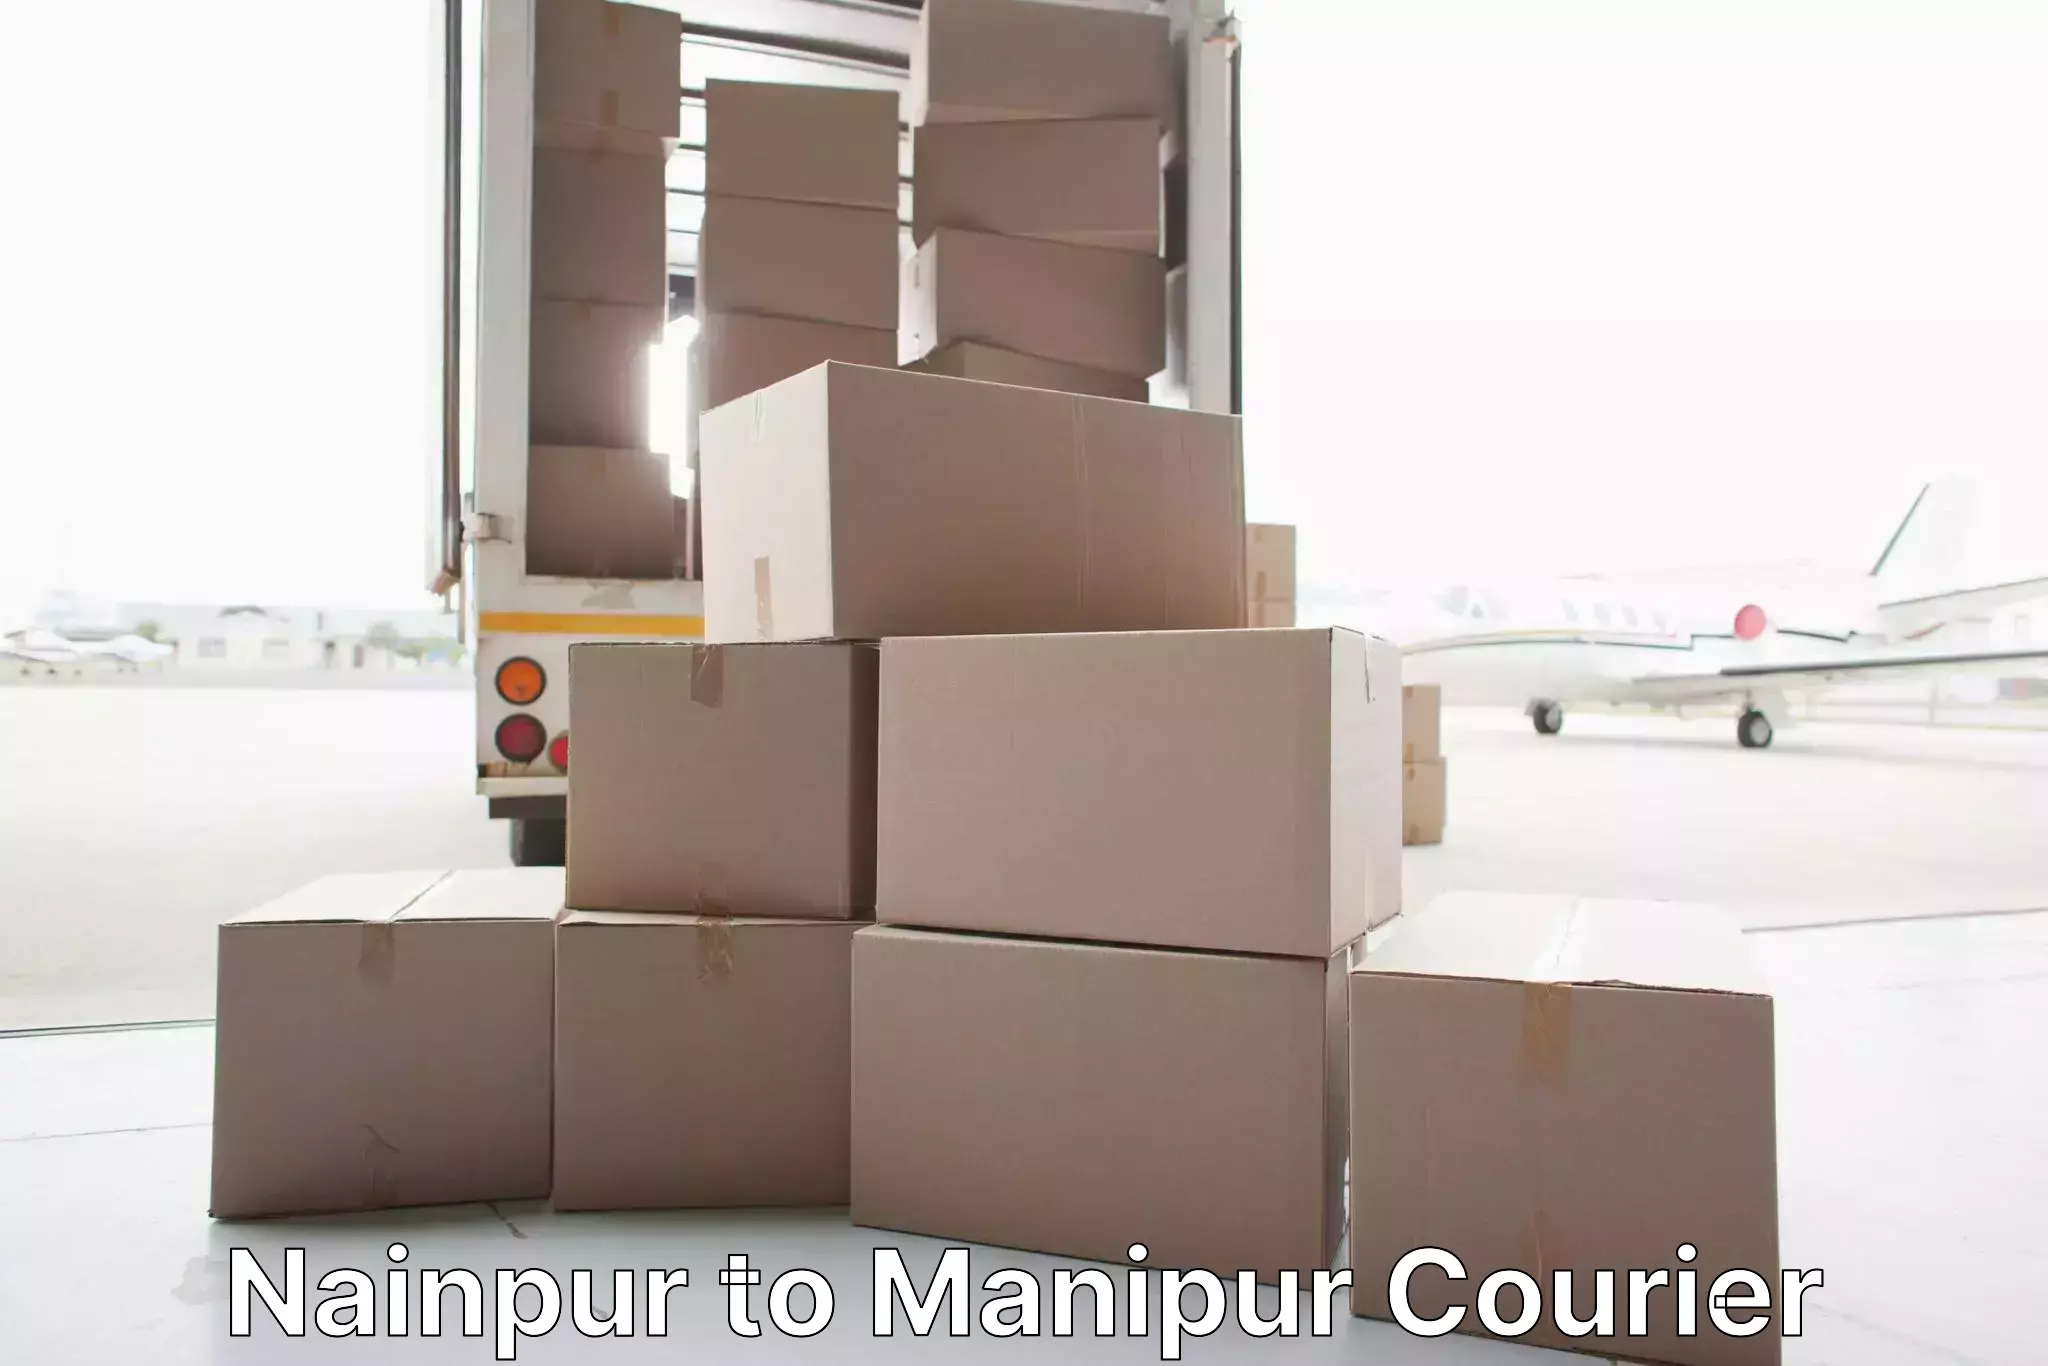 Professional moving company Nainpur to Moirang